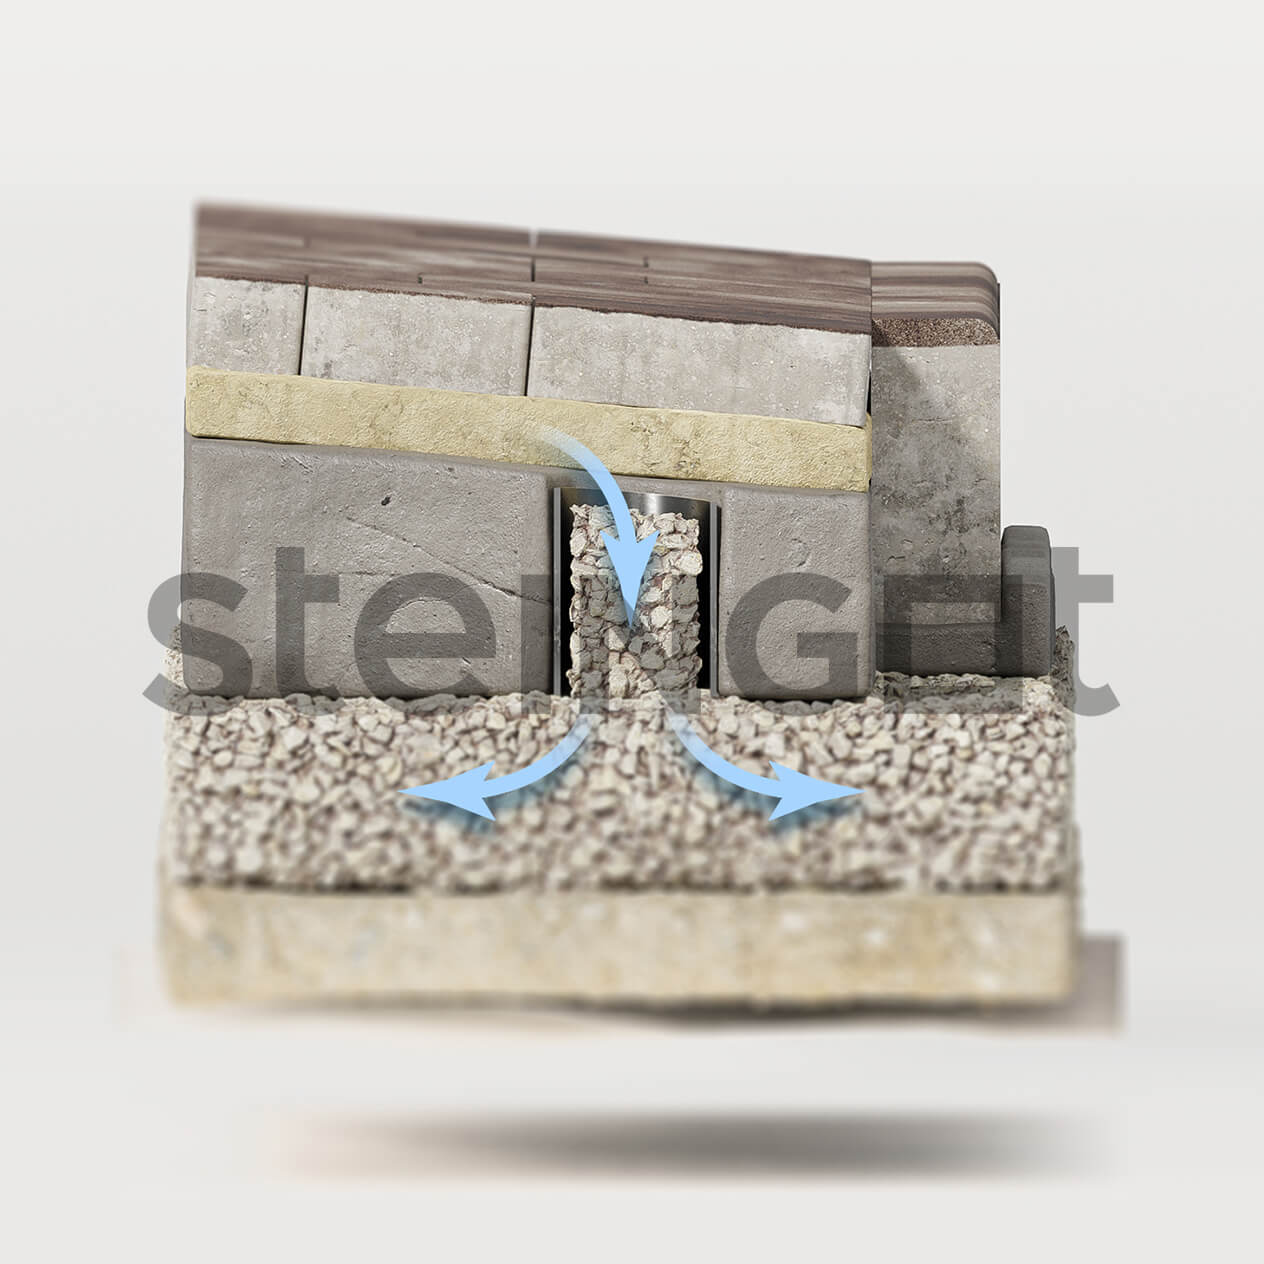 Steingot - укладка на бетонное оcнование влагоприемник вид сбоку